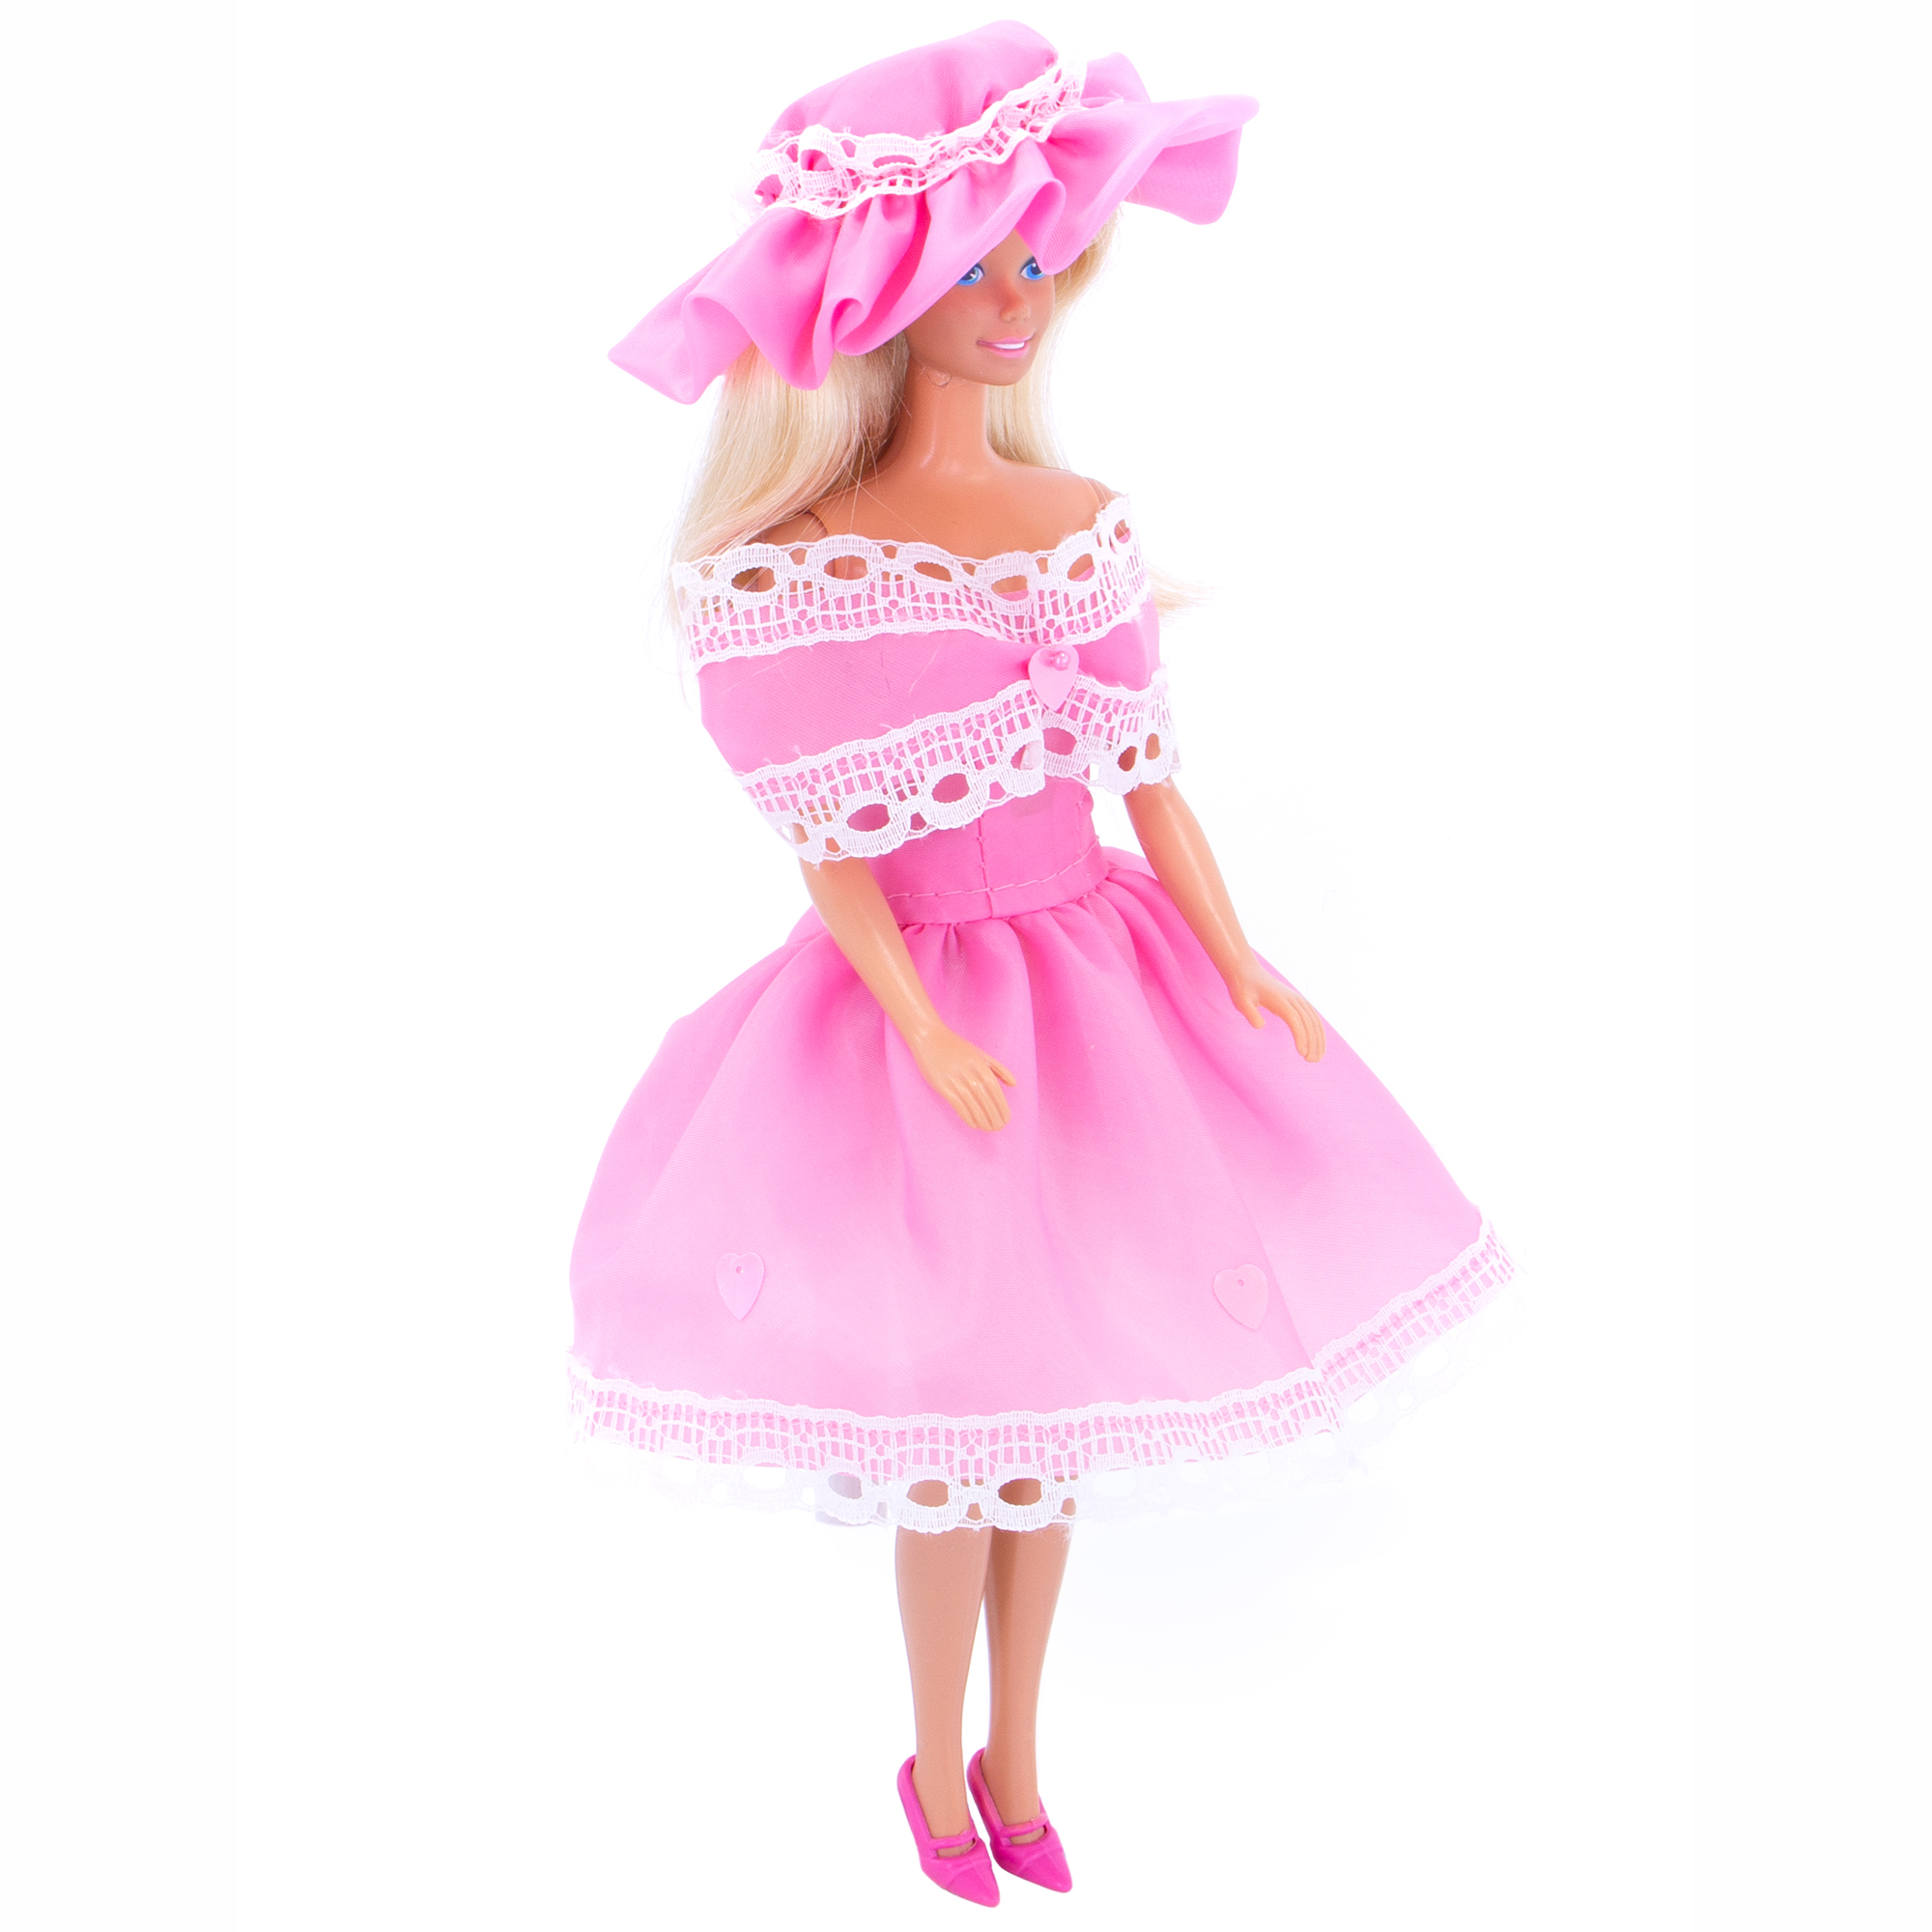 Легкое платье из шелка Модница для куклы 29 см 1401 розовый 1401розовый - фото 3